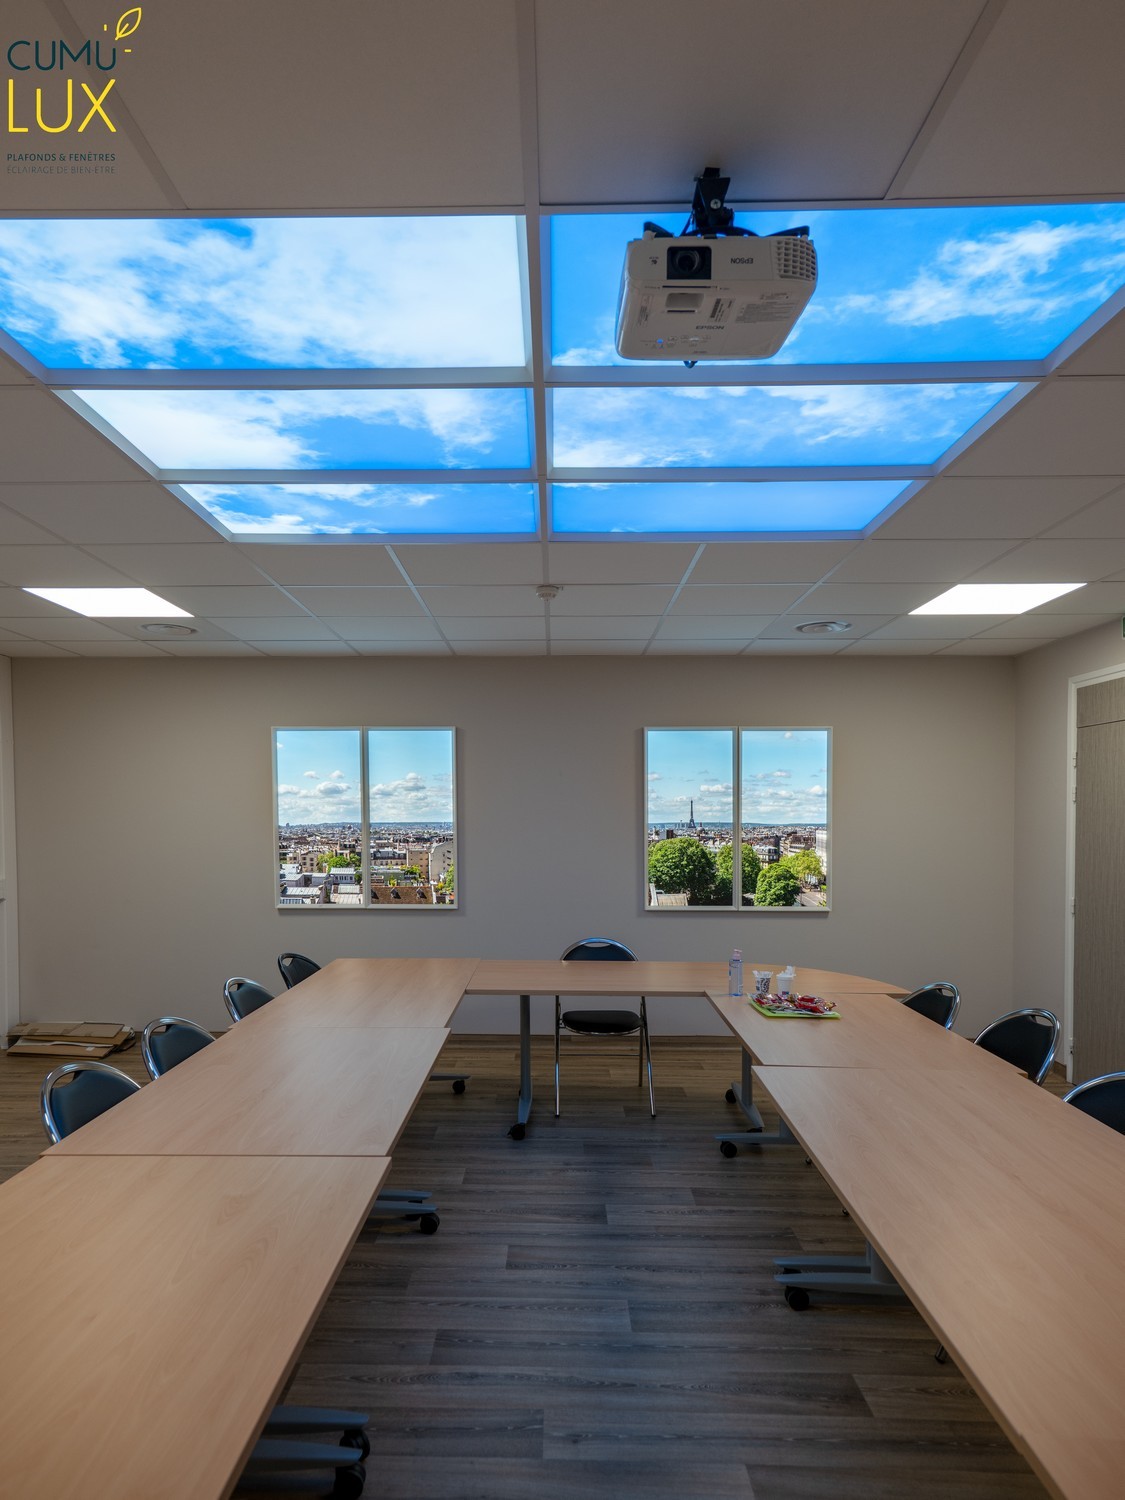 Faux plafond et fausses fenêtre Cumulux pour éclairer une salle de réunion aveugle.